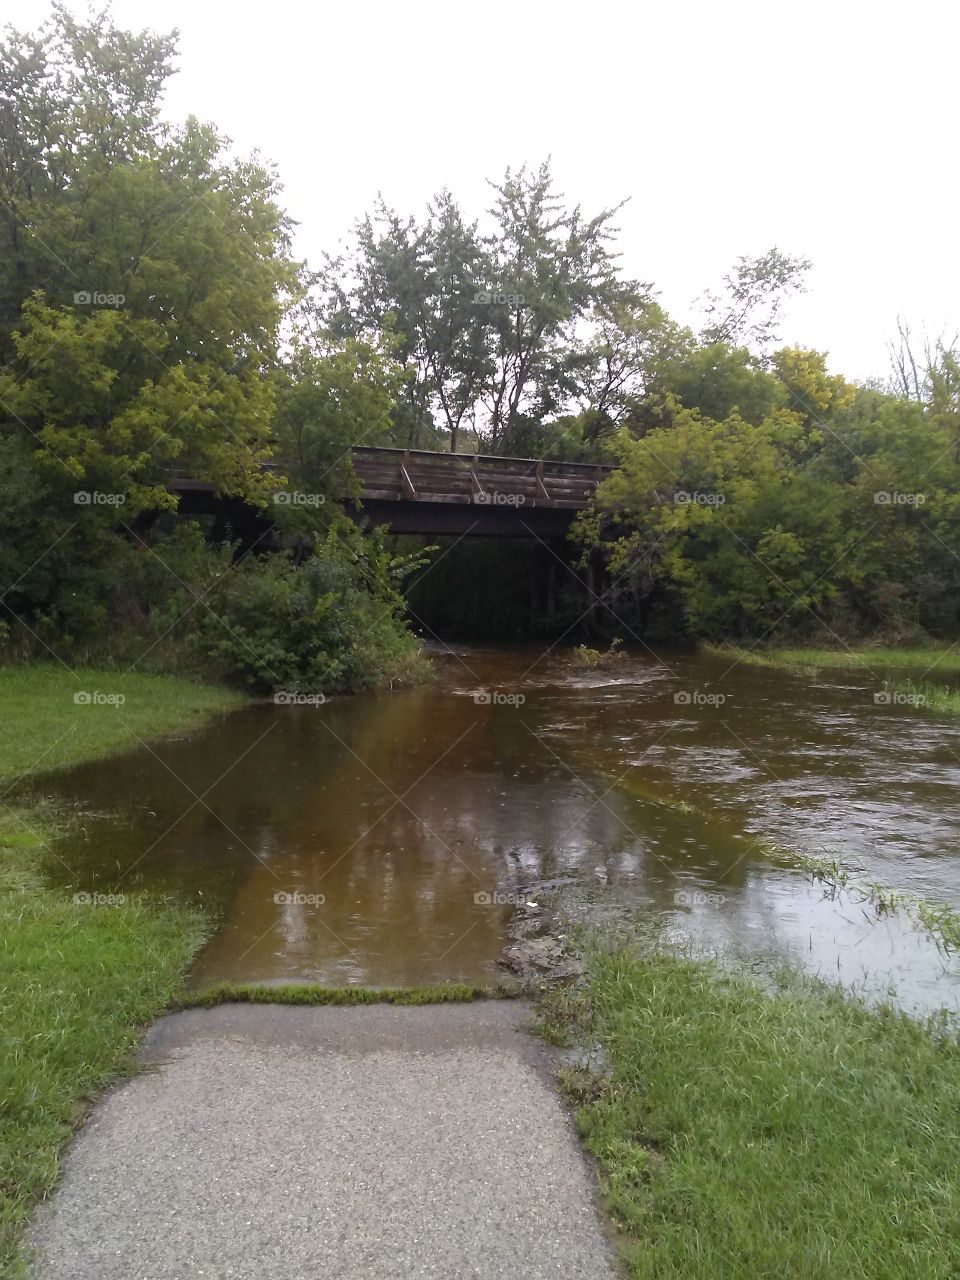 Flooding under an old railroad trestle now the Eisenbahn State Trail in Kewaskum,Wisconsin.